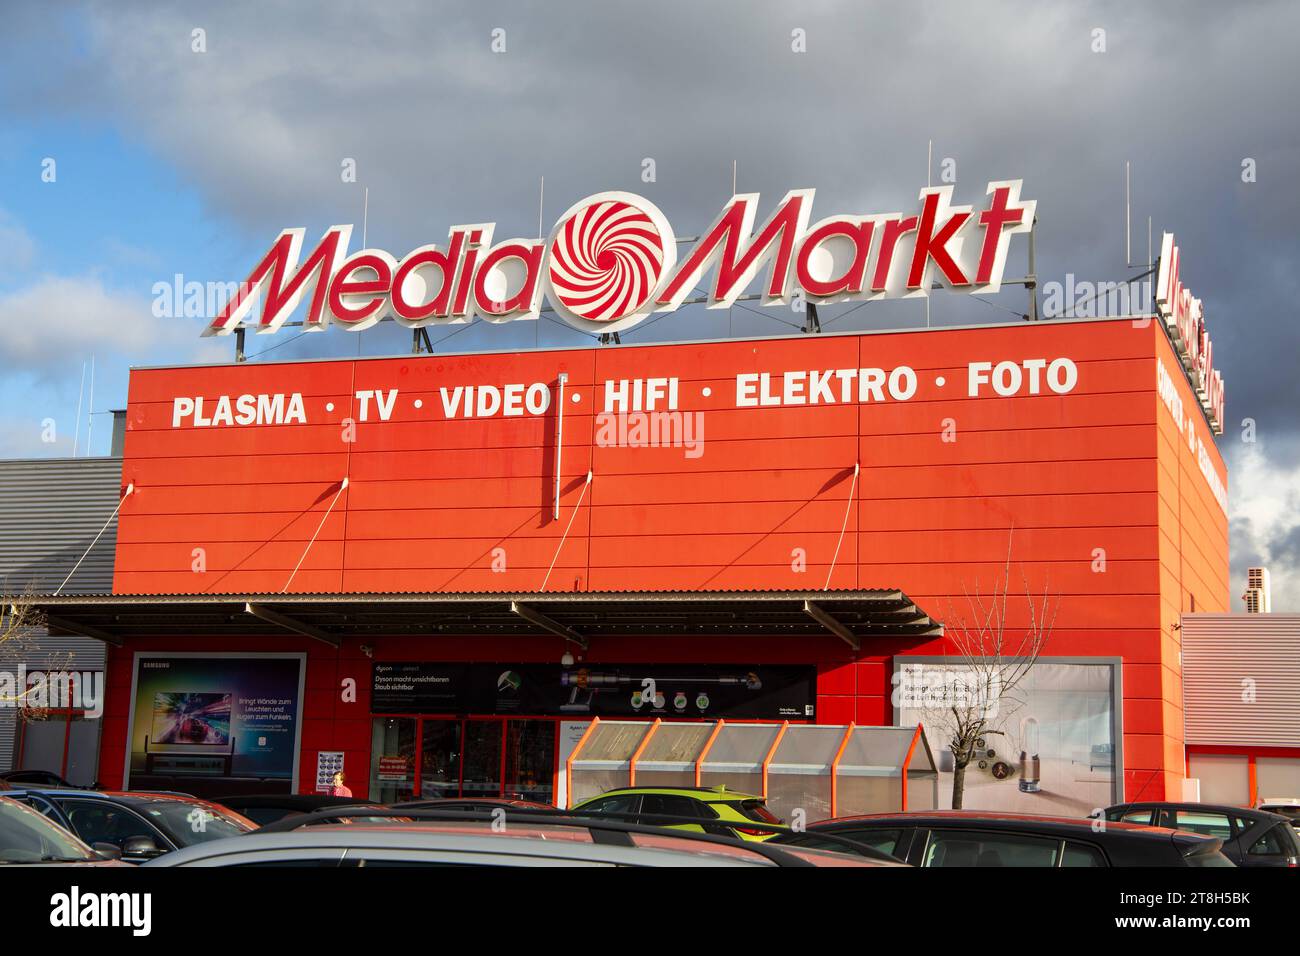 MediaMarkt Madrid - Polígono De Las Mercedes - Centro Comercial